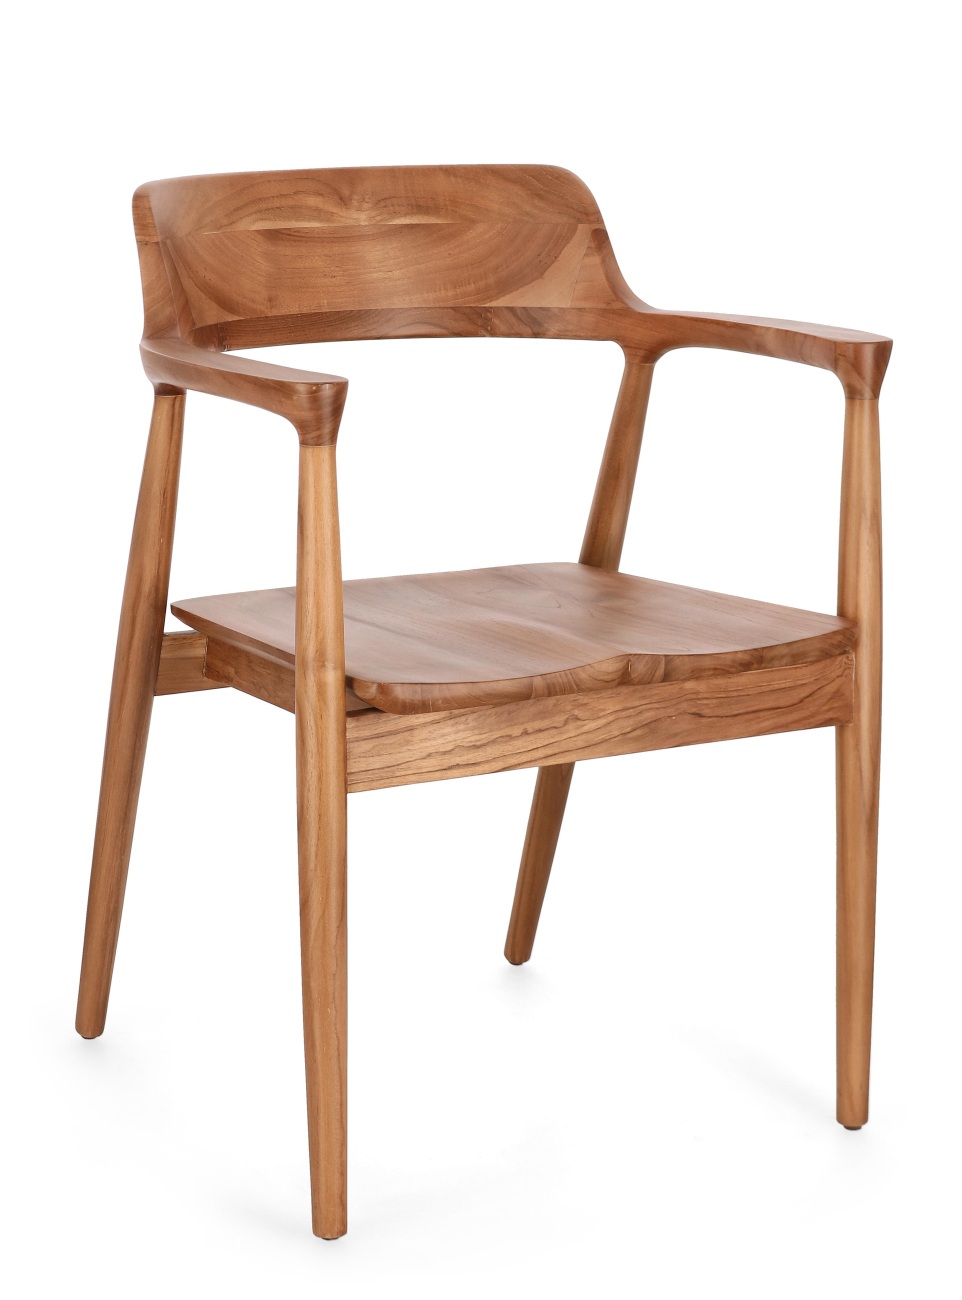 Der Esszimmerstuhl Suzy überzeugt mit seinem modernen Stil. Gefertigt wurde er aus Teakholz, welcher einen natürlichen Farbton besitzt. Der Stuhl besitzt eine Sitzhöhe von 46 cm.